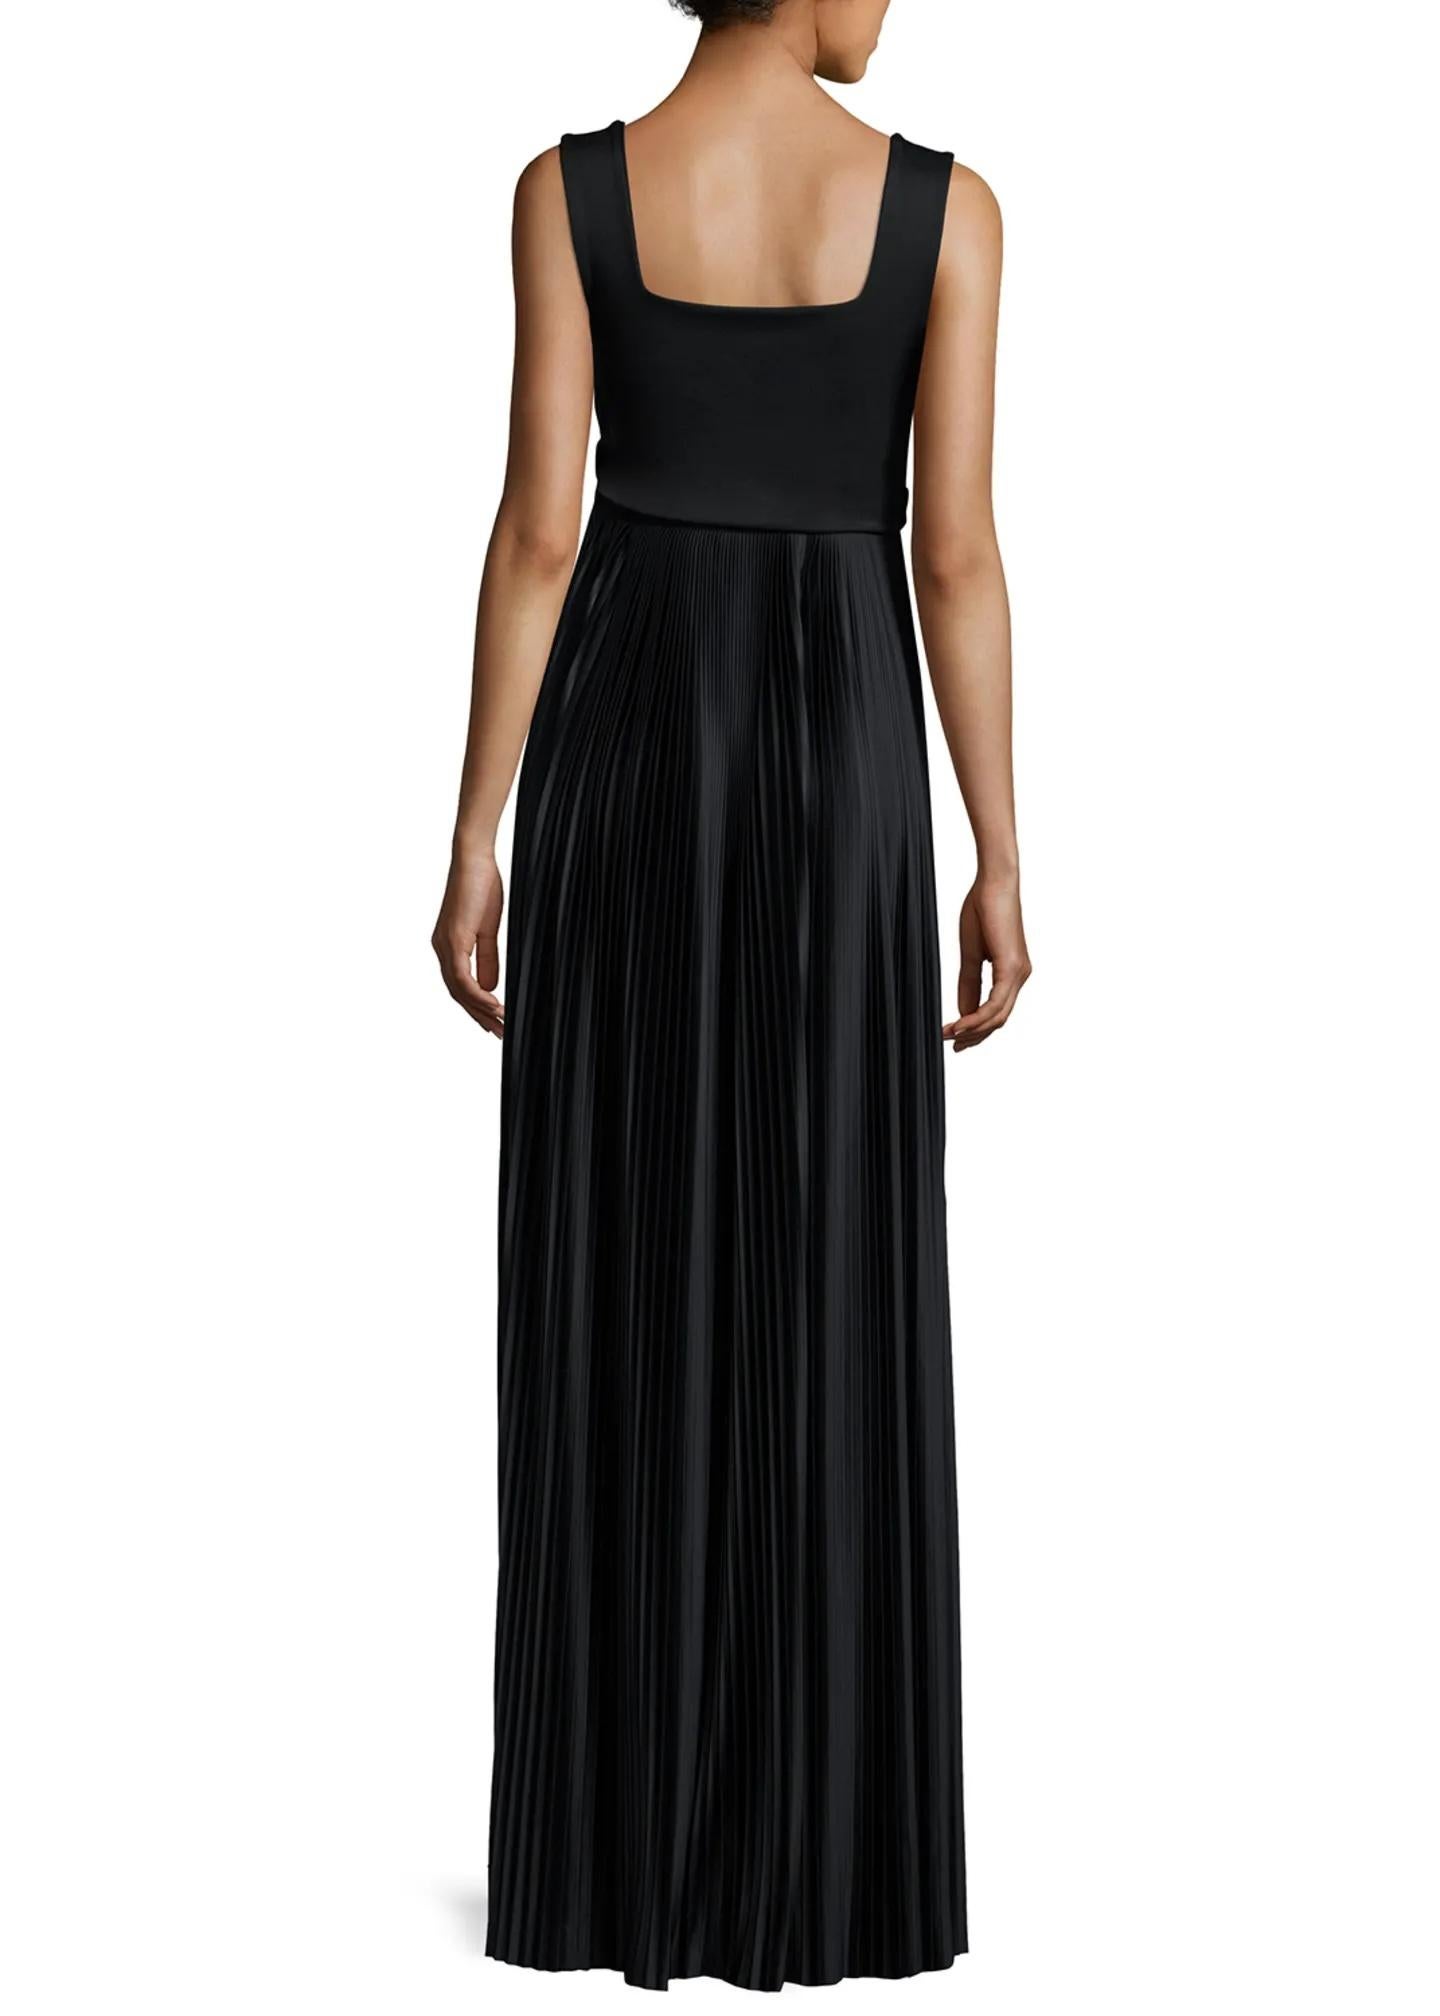 Te presentamos el epítome de la sofisticación y la elegancia atemporal: El Vestido Negro Alain de The Row en la talla XS. Confeccionado a la perfección y nuevo con etiquetas, este exquisito vestido irradia un lujo discreto en cada costura.

El